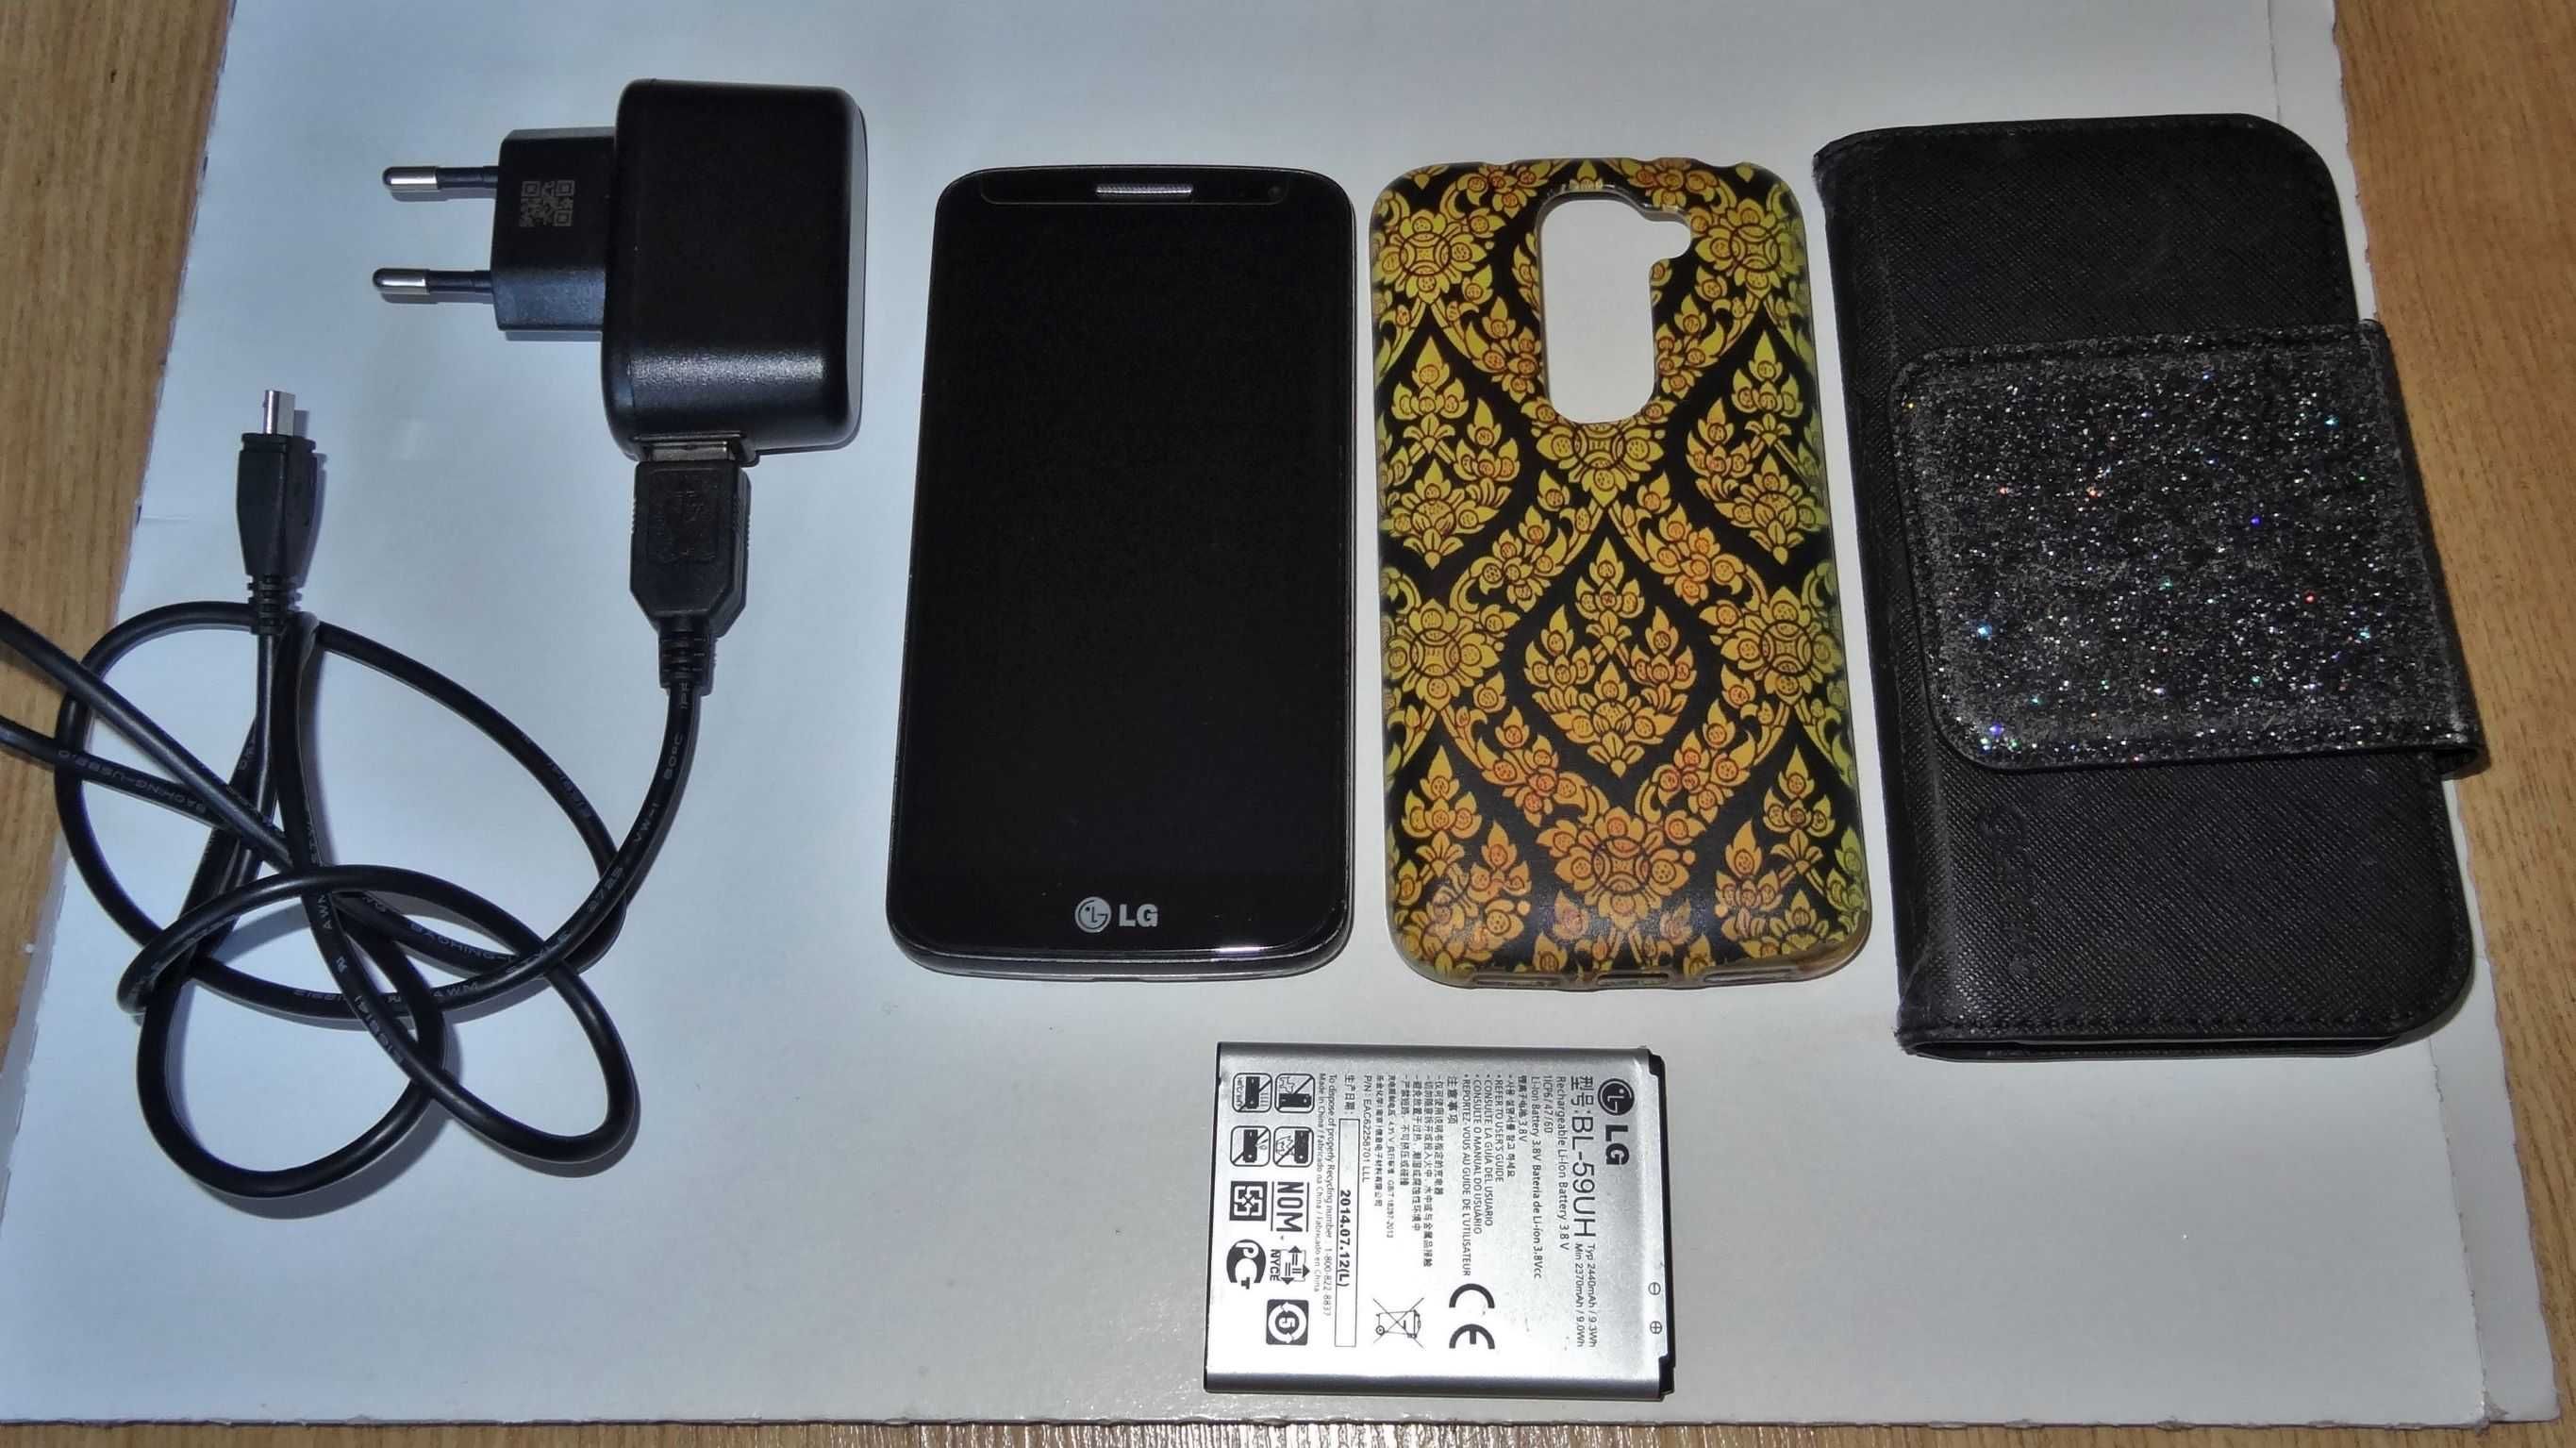 zgrabny telefon/smartfon LG z NFC I wymienną baterią, mega zestaw !!!